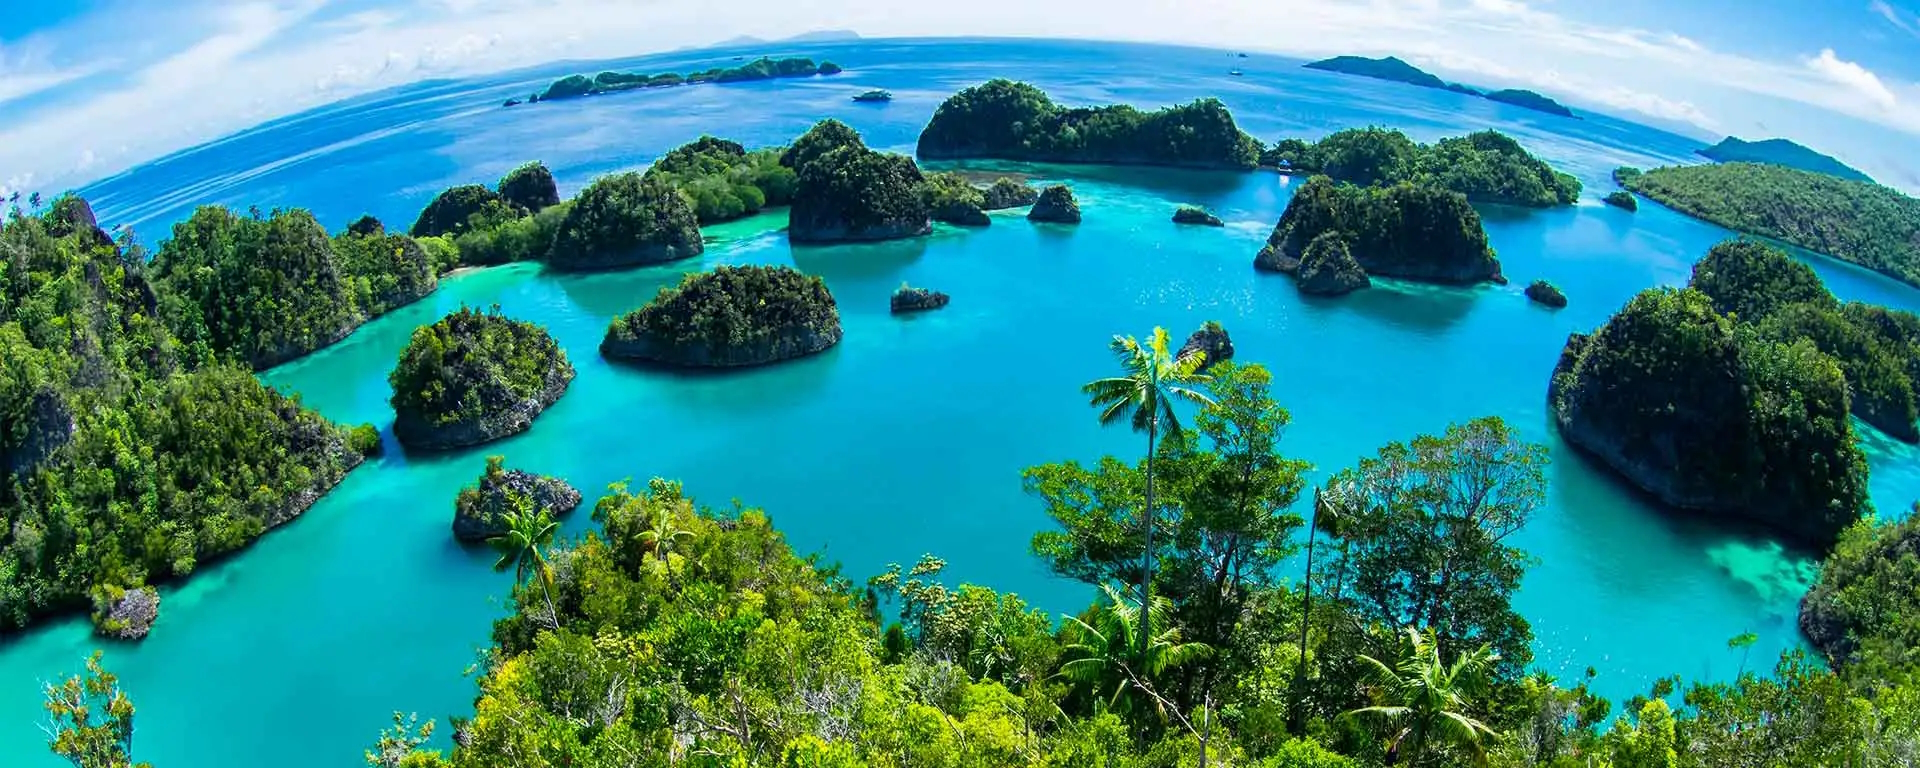 VIAGEM: As ilhas secretas mais belas do mundo